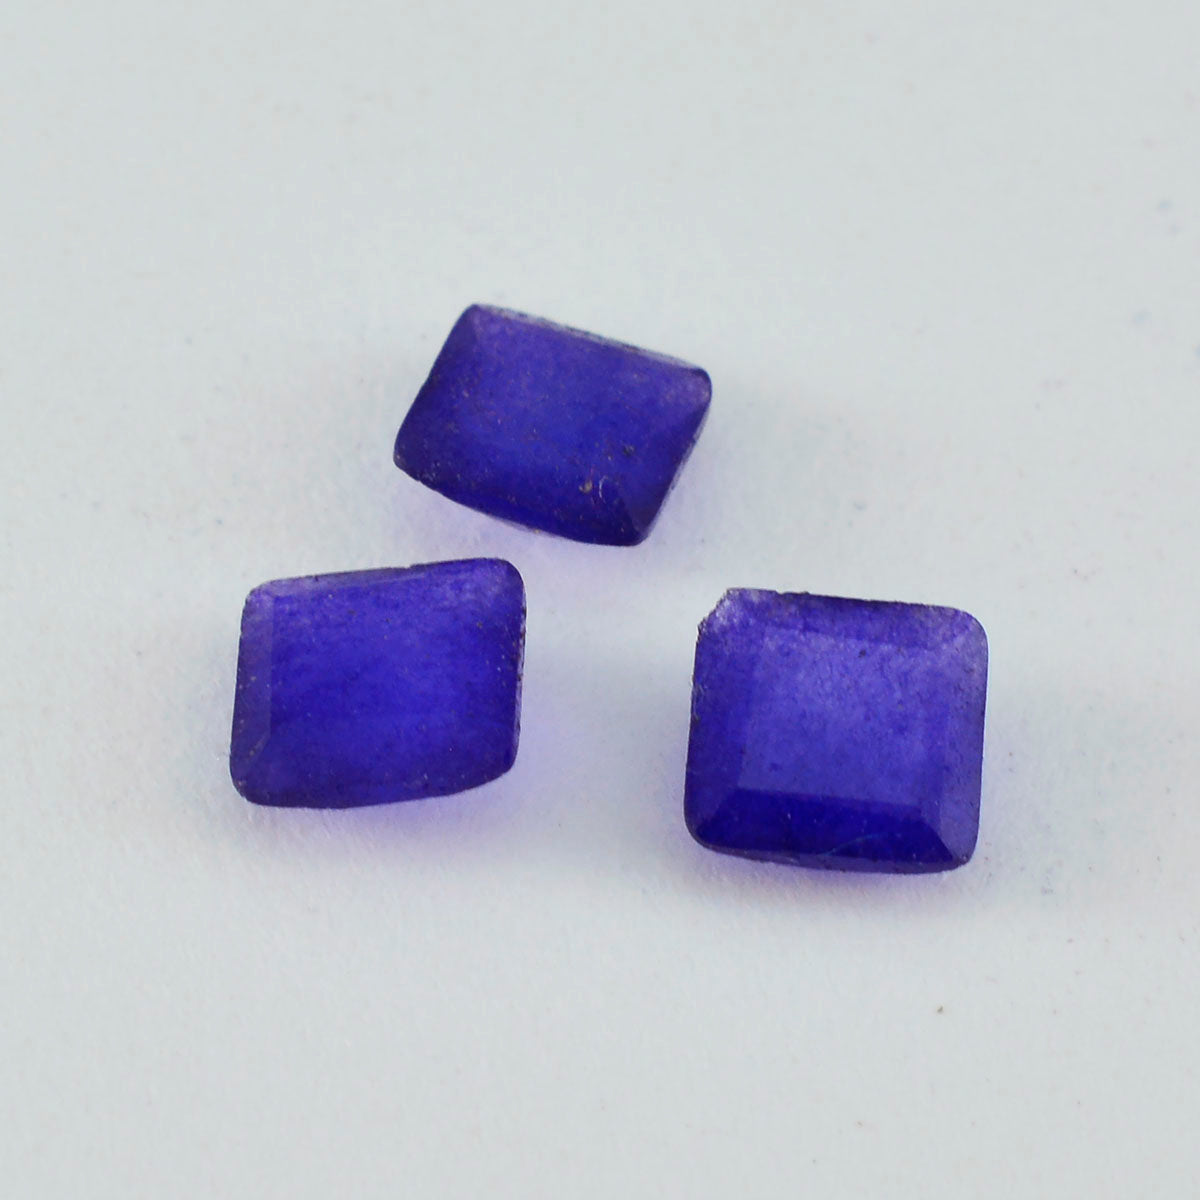 riyogems 1шт натуральная голубая яшма ограненная 10x10 мм квадратная форма красивые качественные драгоценные камни